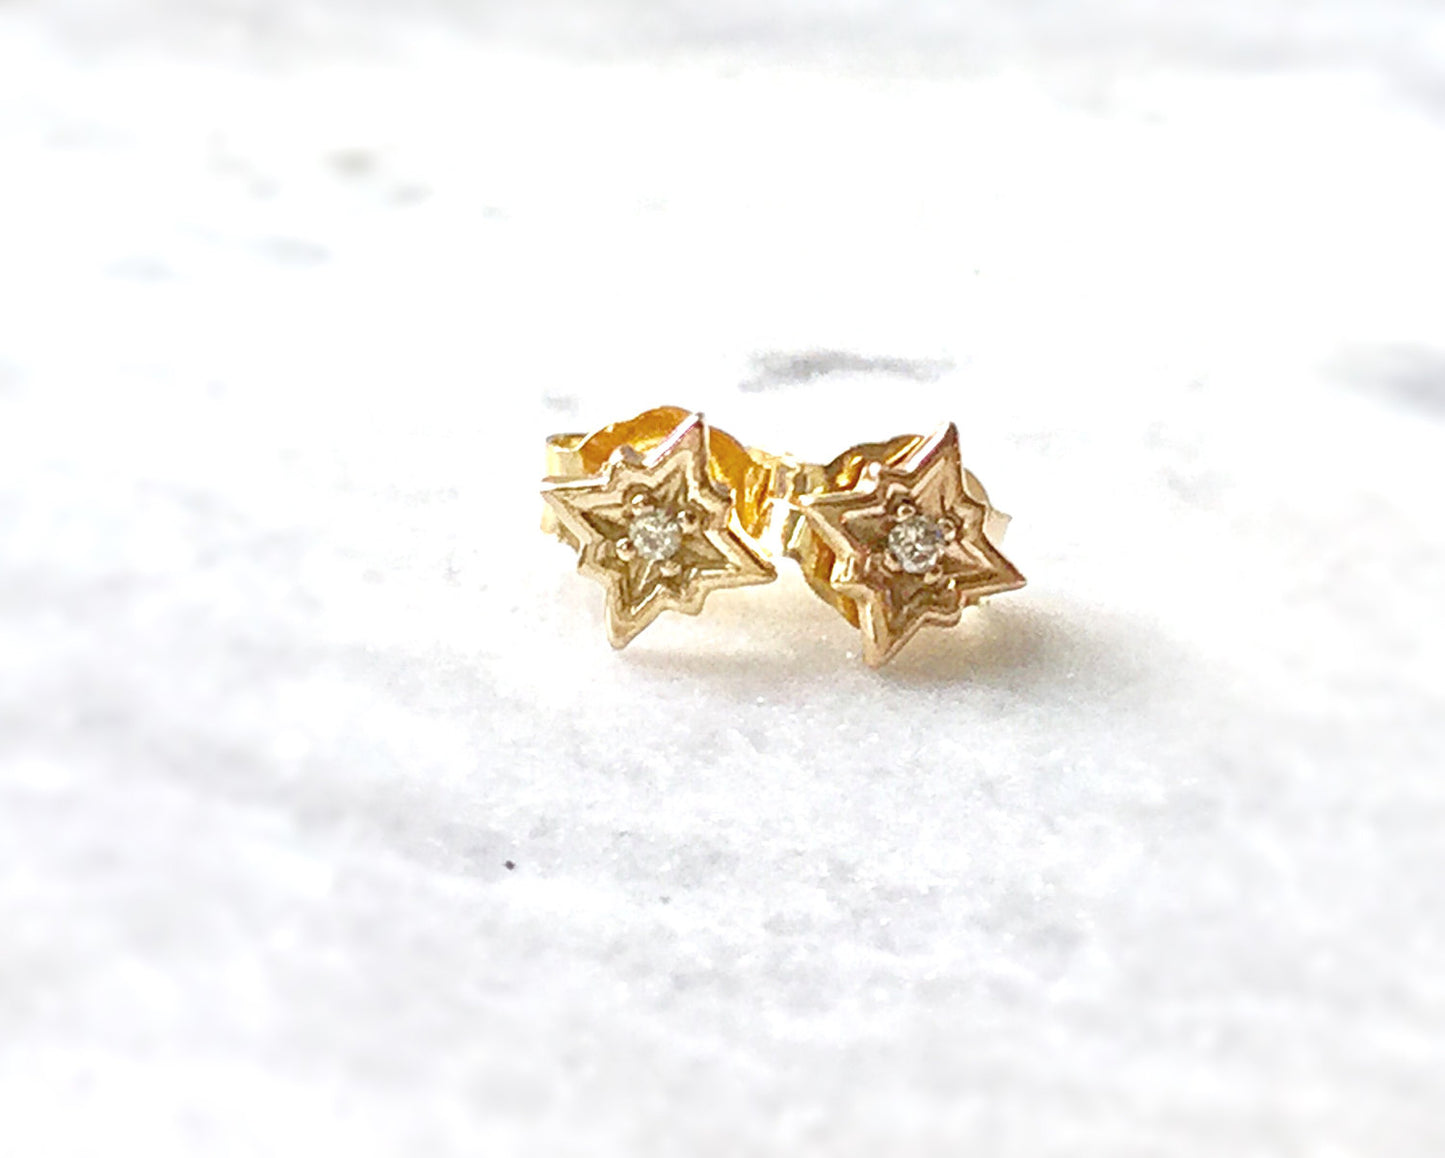 14k Gold Diamond Star Earrings